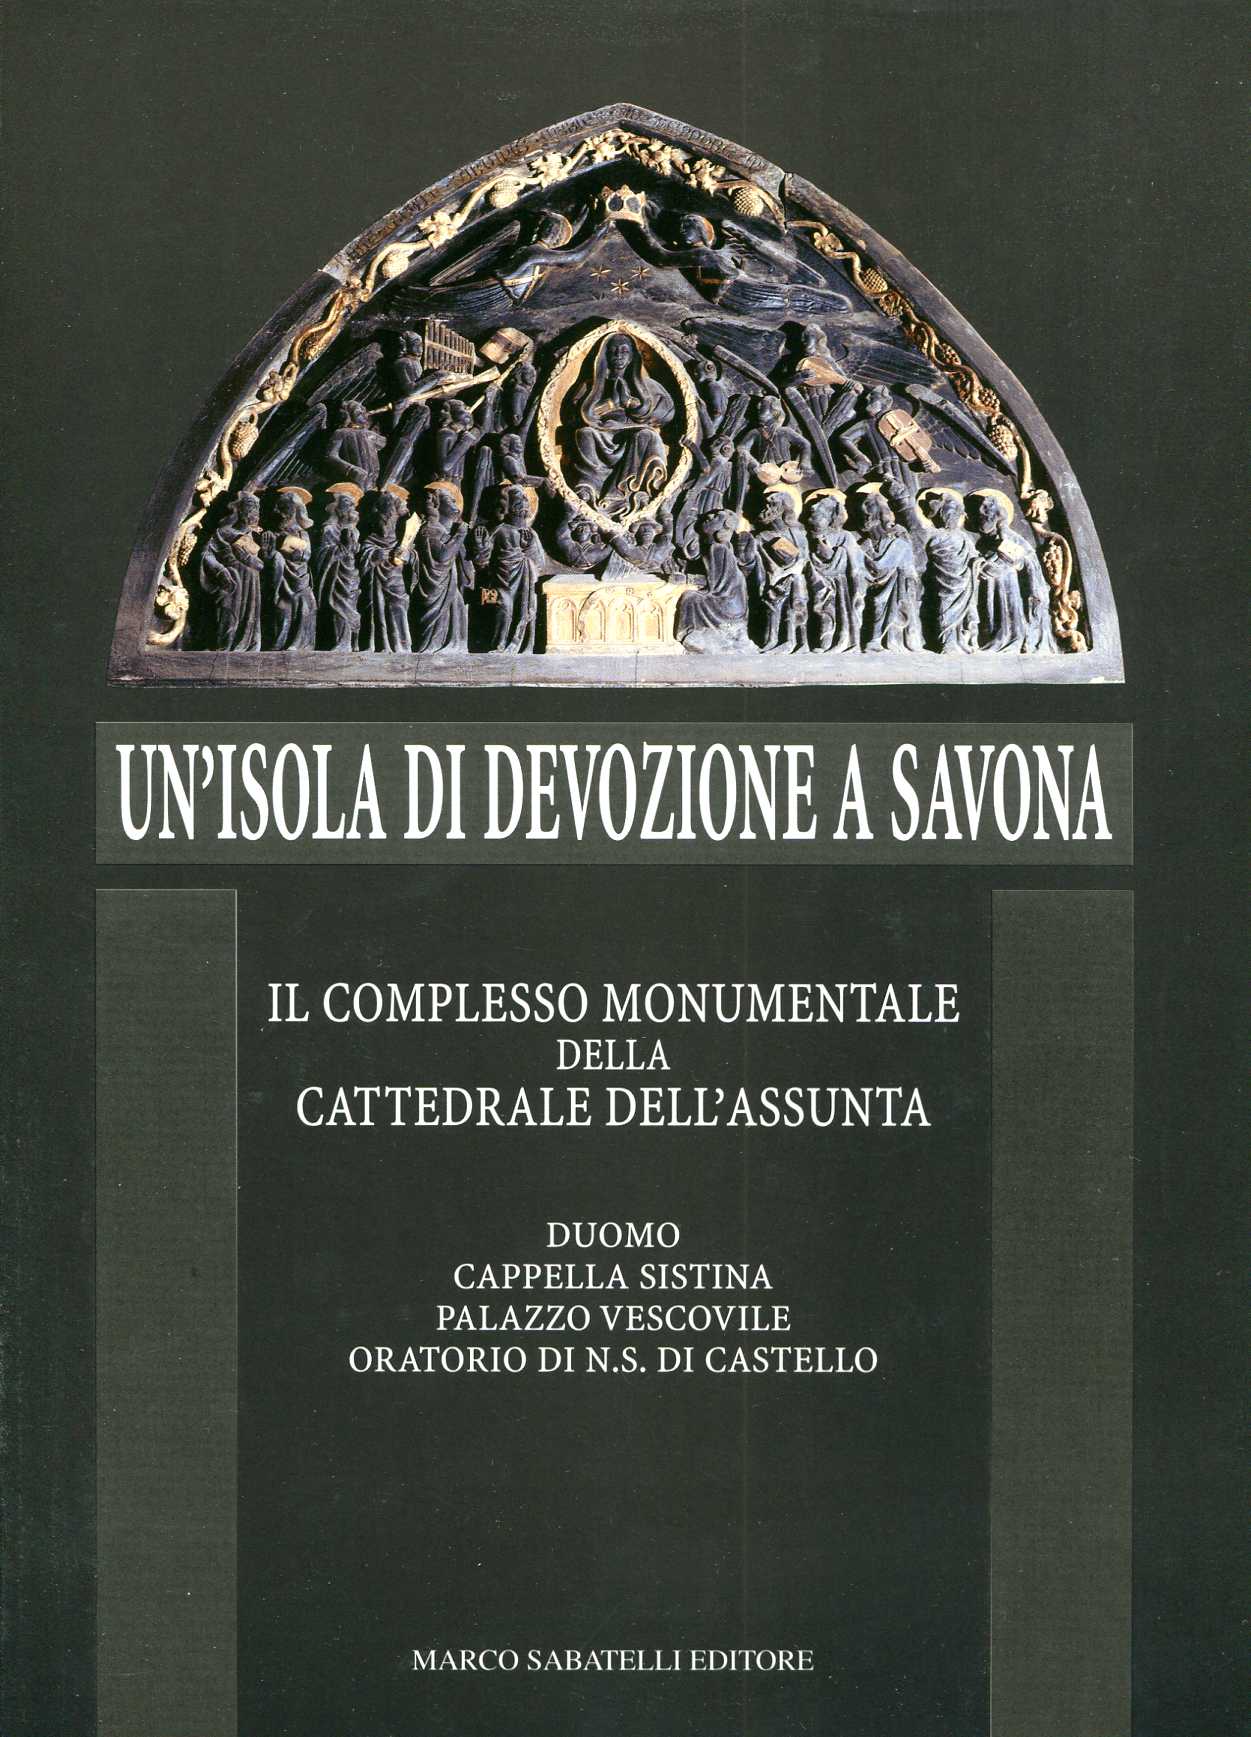 Un'isola di devozione a Savona - Il Complesso Monumentale della Cattedrale dell'Assunta